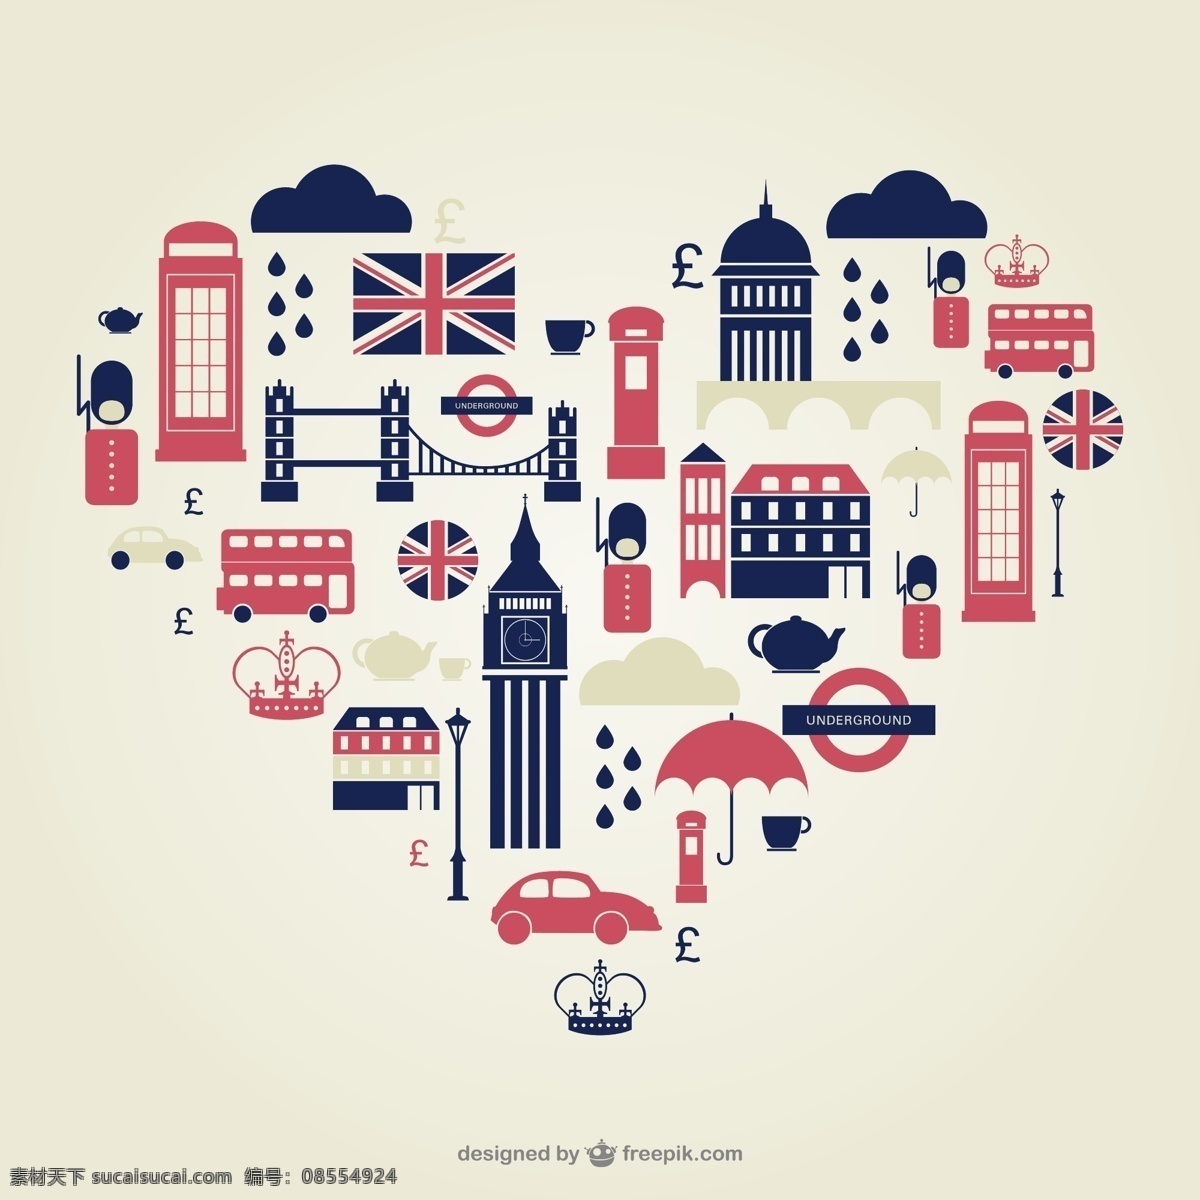 心 型 伦敦 旅游 元素 背景 矢量 大本钟 双层巴士 电话亭 英国国旗 图标 心形 矢量图